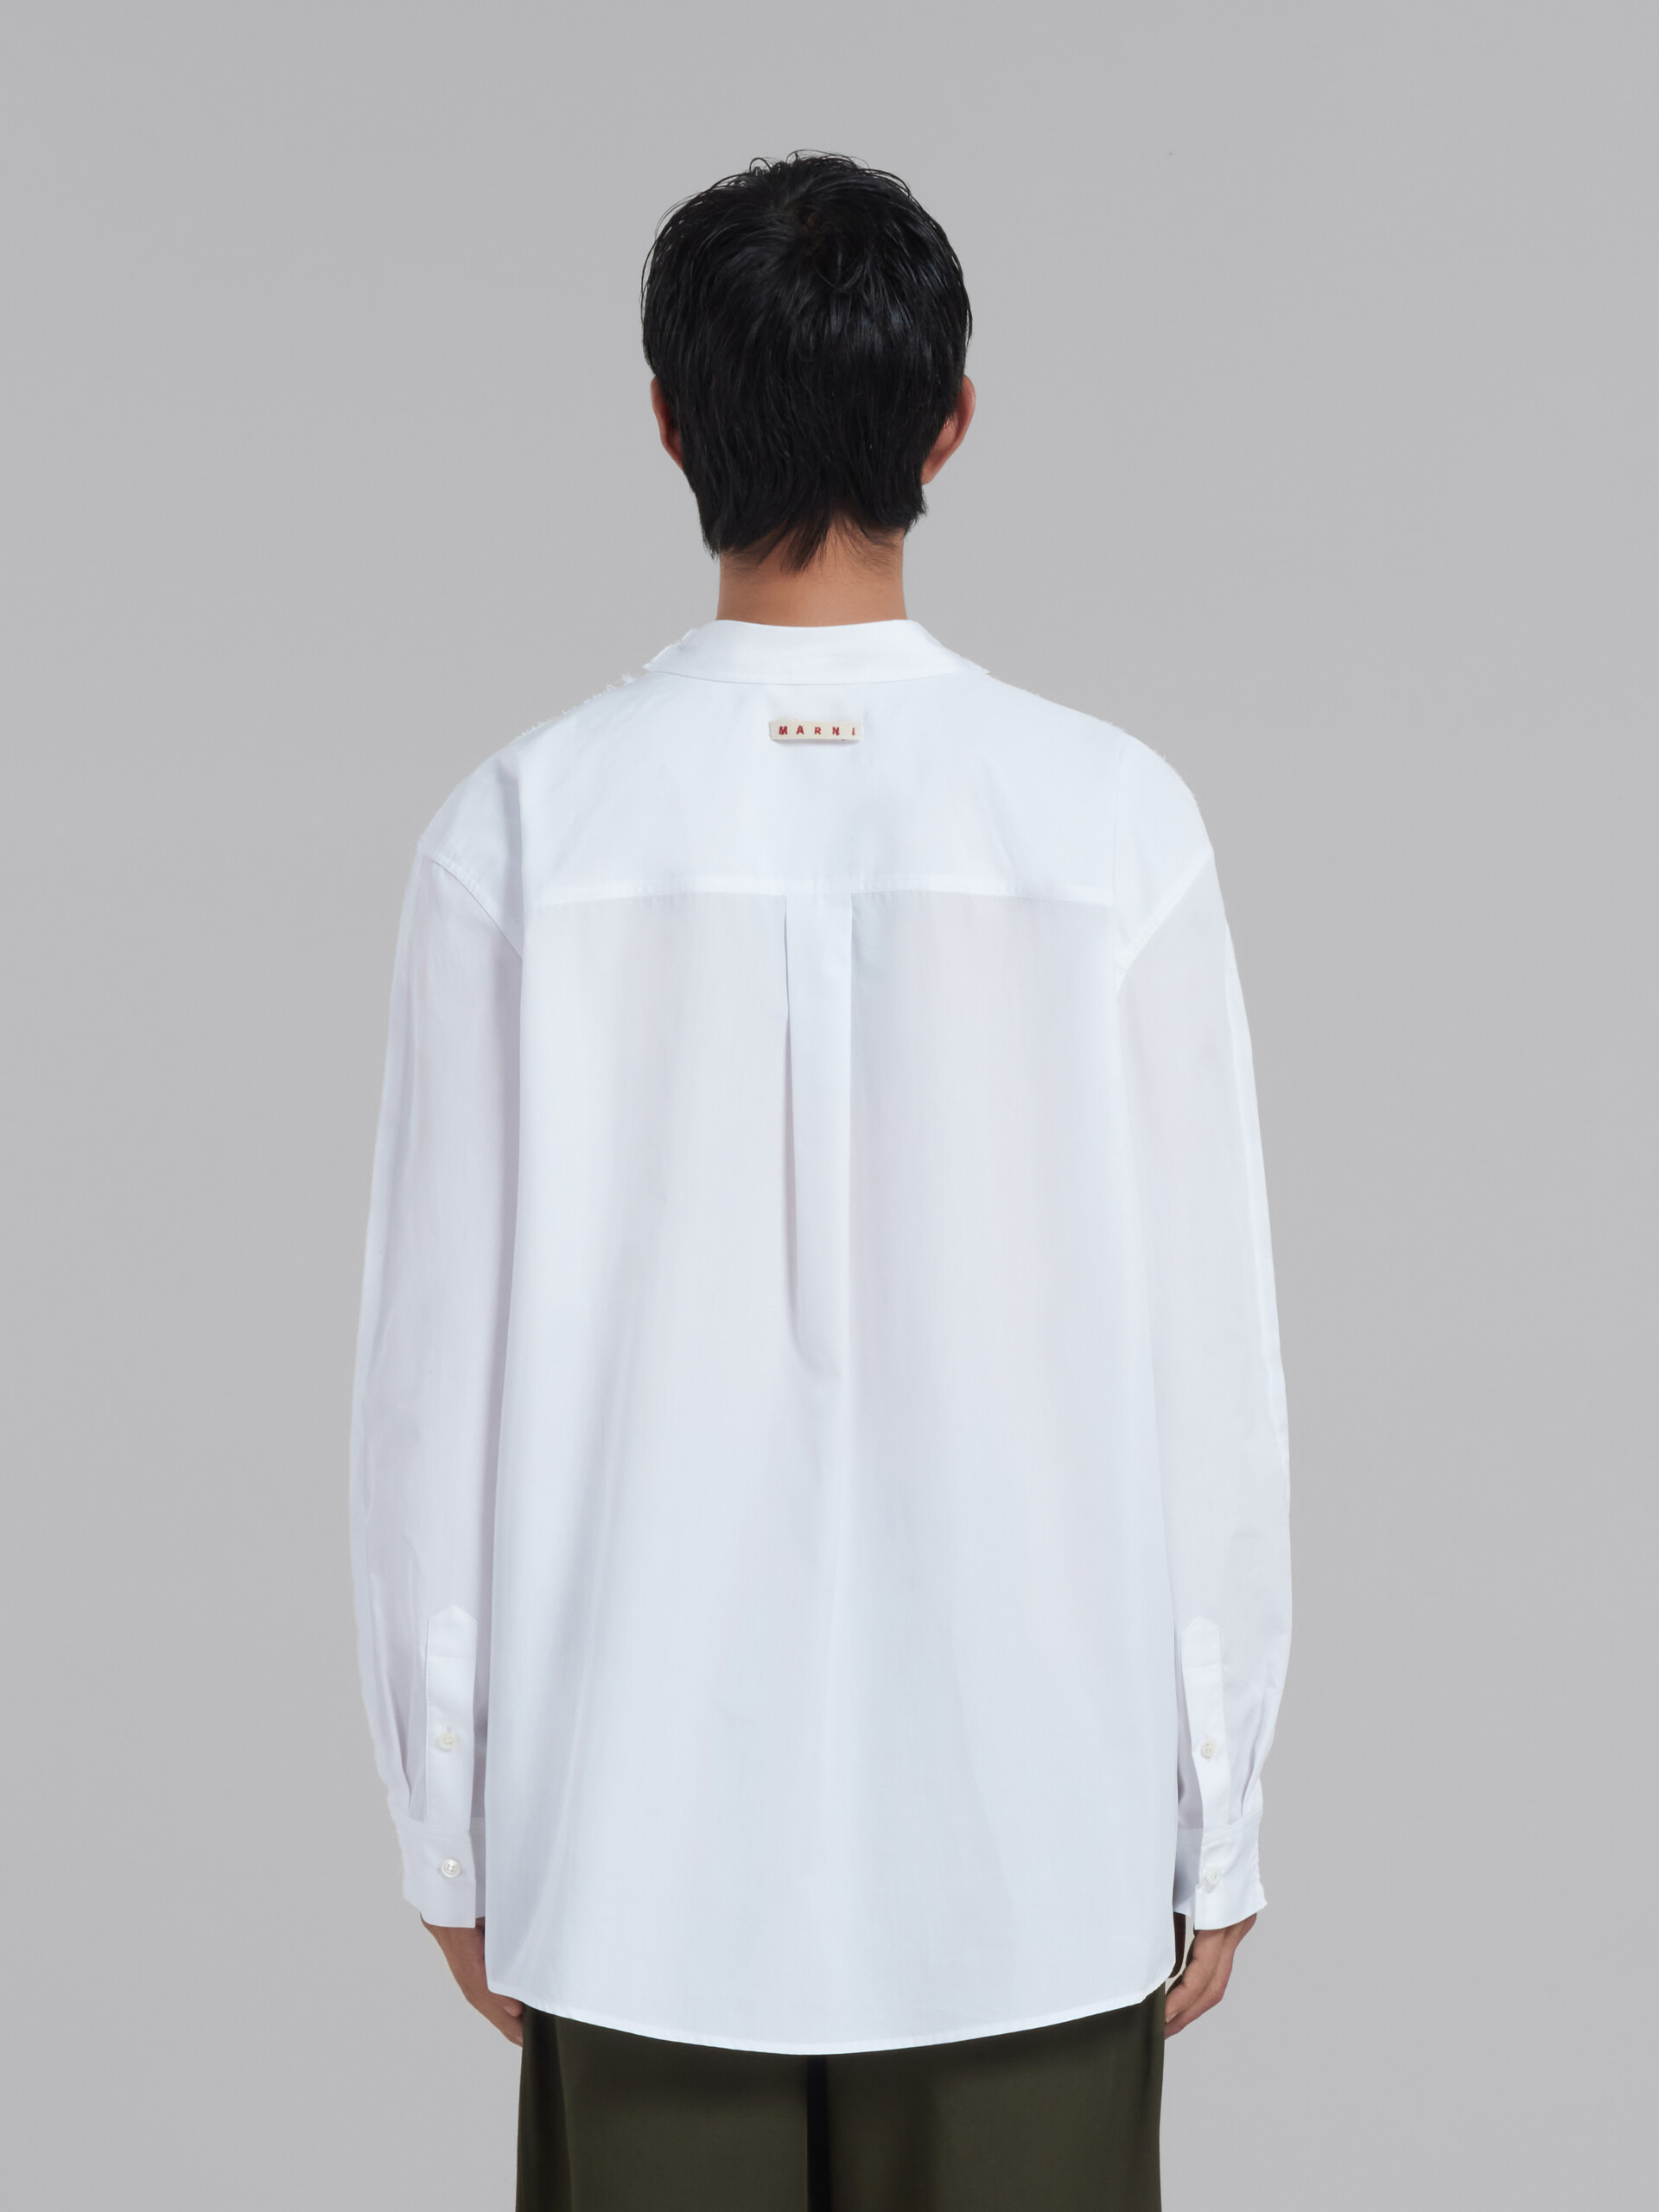 ホワイト バックヨーク オーガニックコットン 長袖Tシャツ(リラックスフィット) - Tシャツ - Image 3